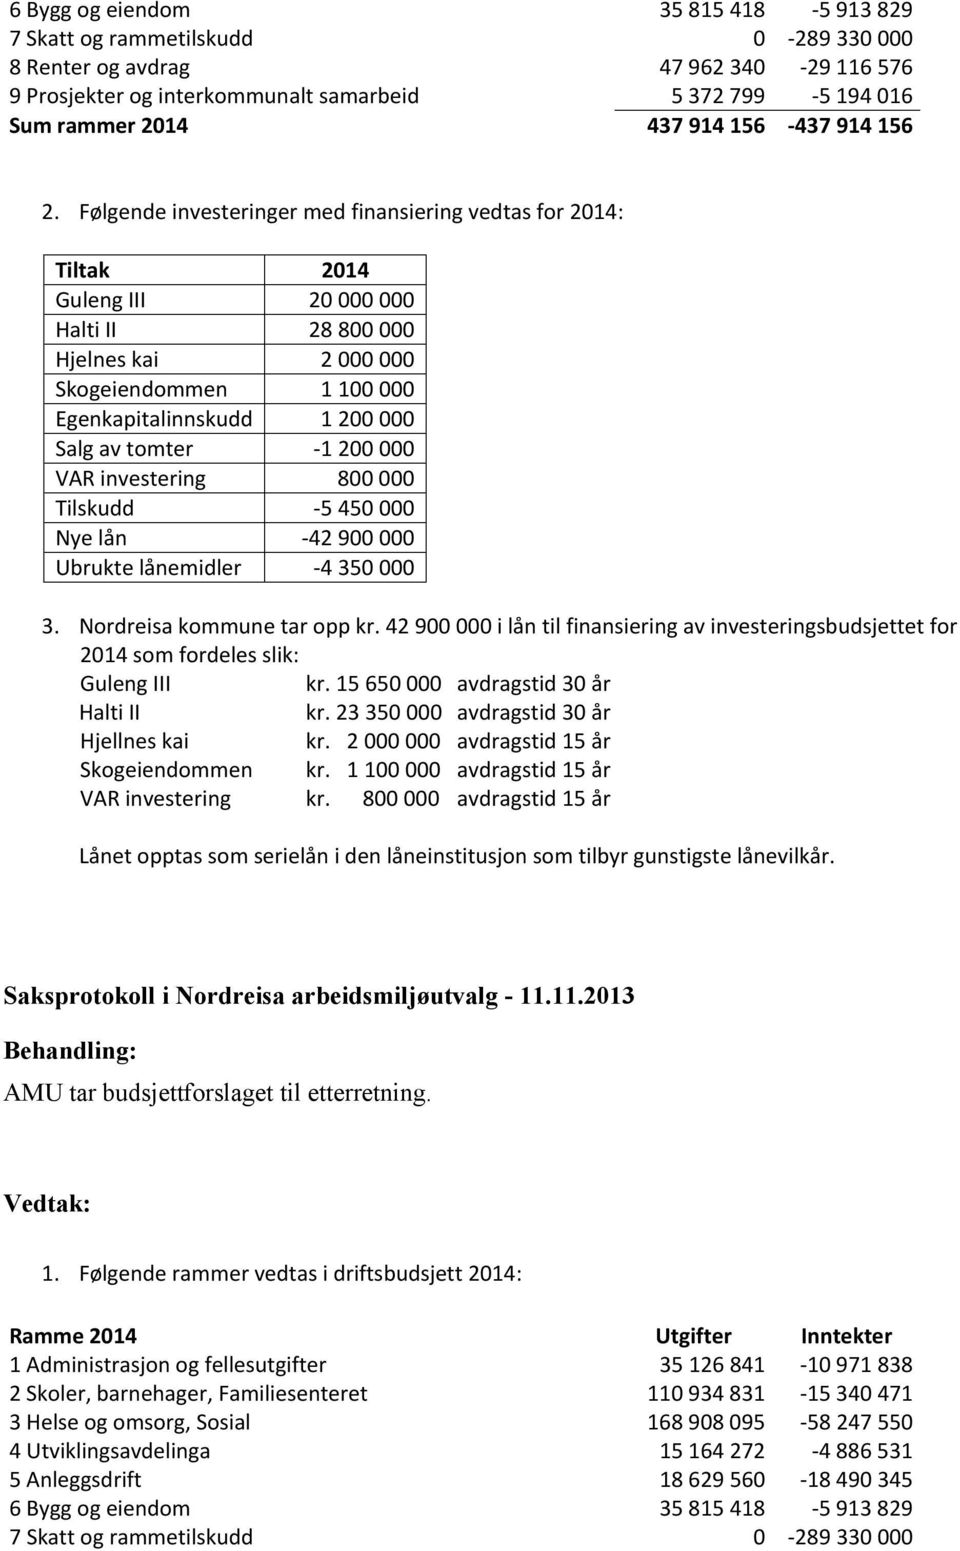 Følgende investeringer med finansiering vedtas for 2014: Tiltak 2014 Guleng III 20 000 000 Halti II 28 800 000 Hjelnes kai 2 000 000 Skogeiendommen 1 100 000 Egenkapitalinnskudd 1 200 000 Salg av